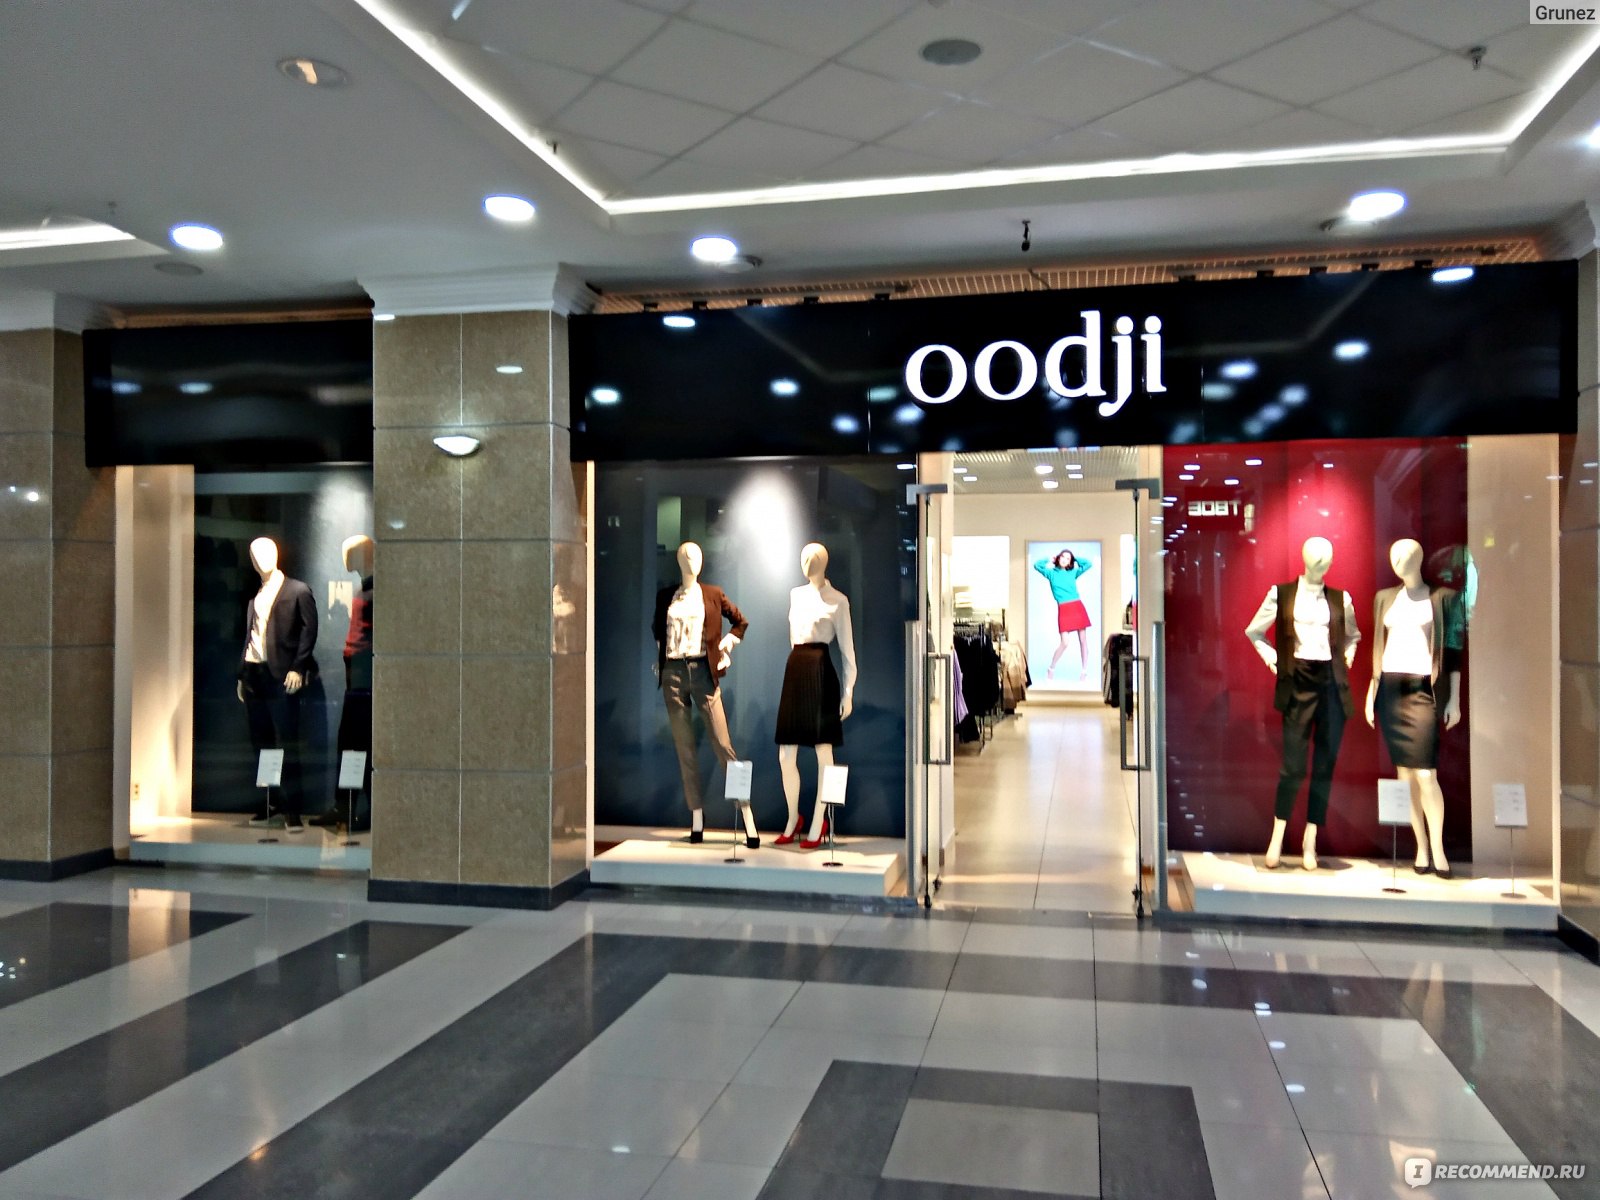 OGGI / Oodji - сеть магазинов одежды - «Изменяю Oodji с ним же! У  магазина есть несколько недостатков, которые меня не особо устраивают! Кому  закрыт путь в Oodji? Какие цены в магазине?